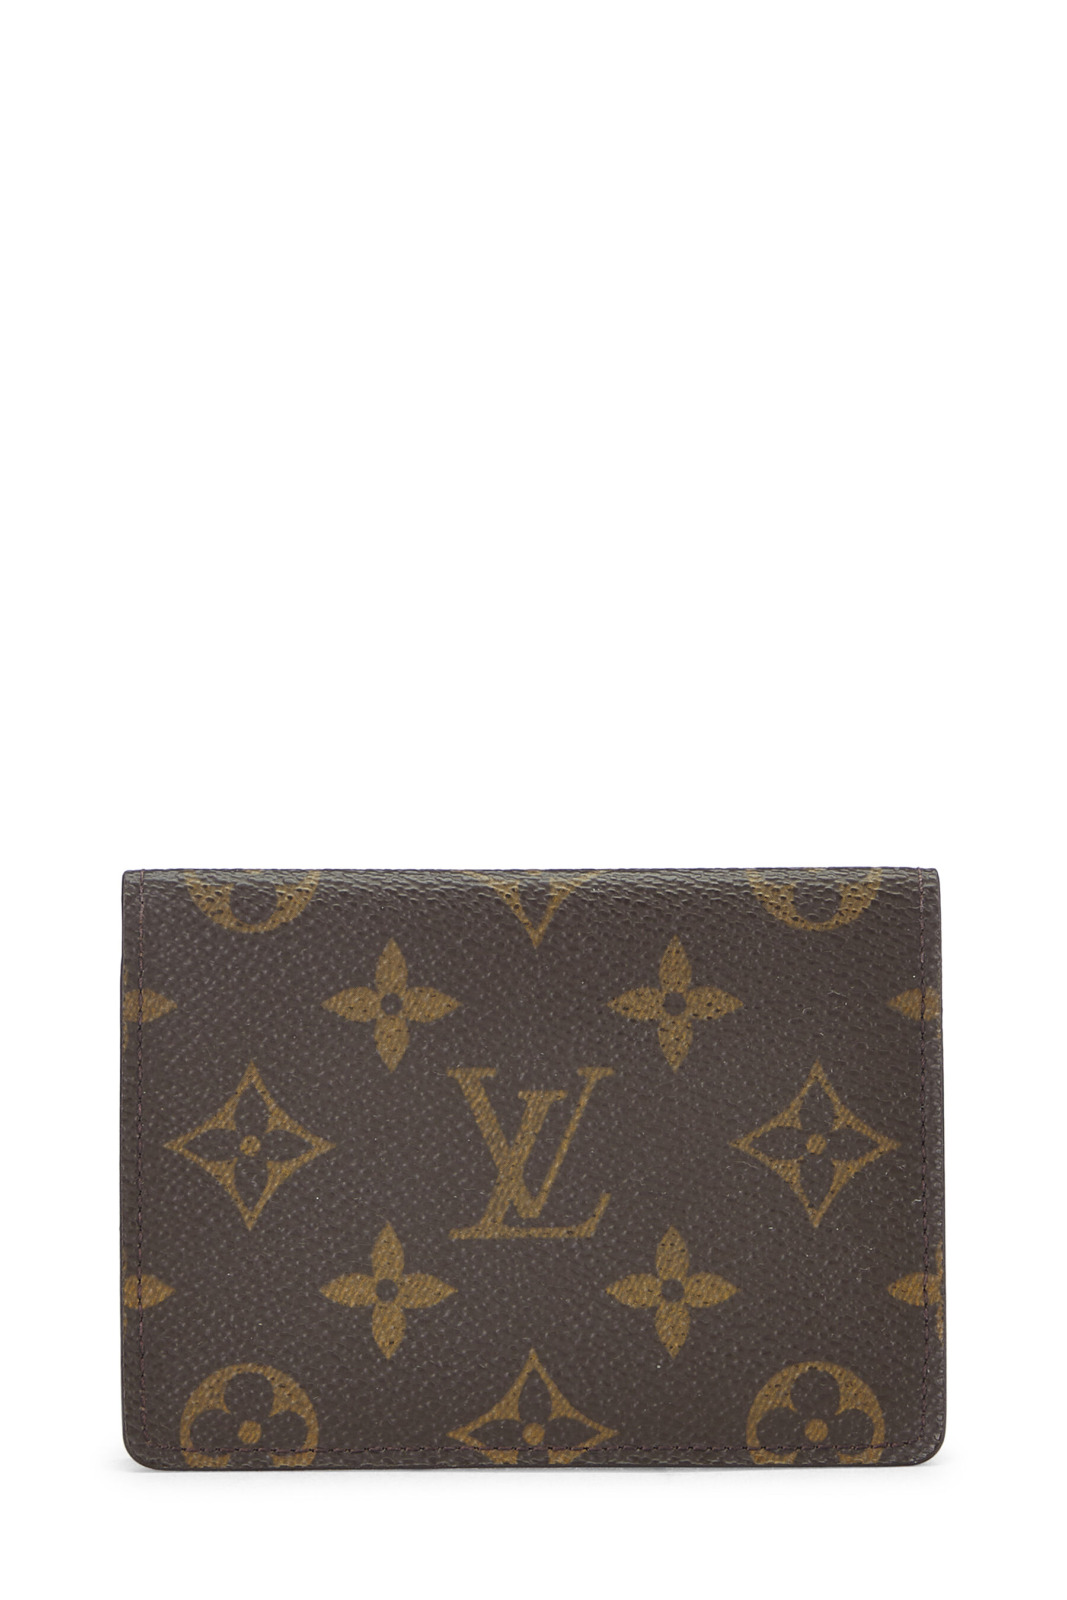 Louis Vuitton - Men's Card Holder Brown - WGACA GOOFASH